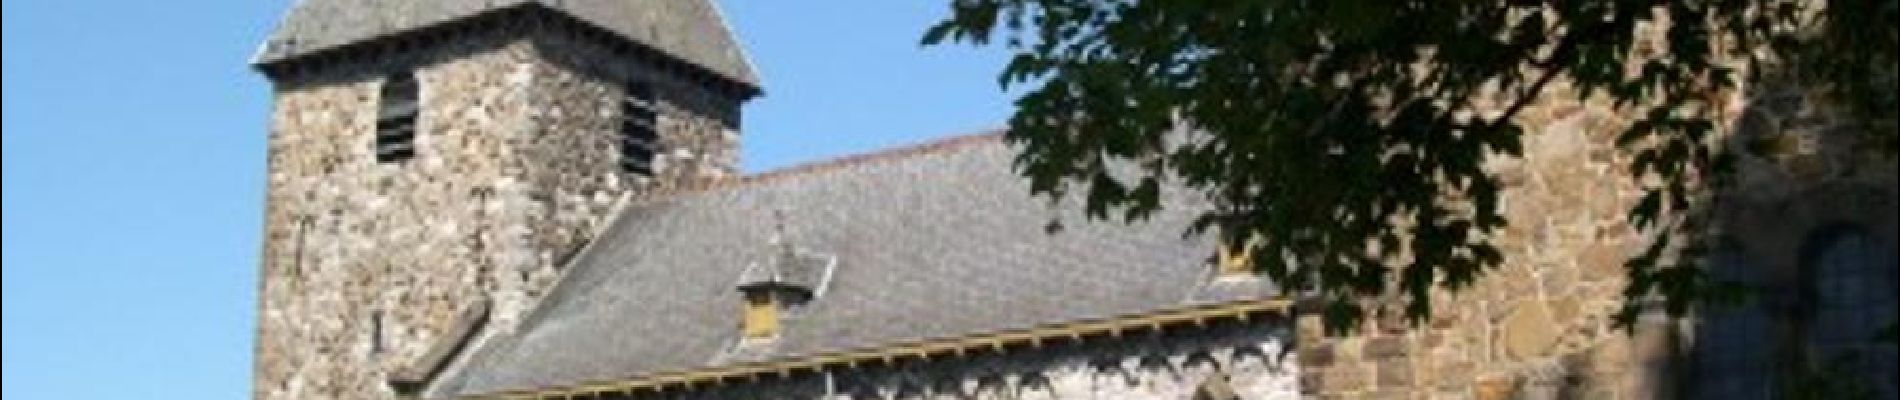 Punto de interés Andenne - Eglise Saint-Pierre dite des Sarrasins d'Andenelle - Photo